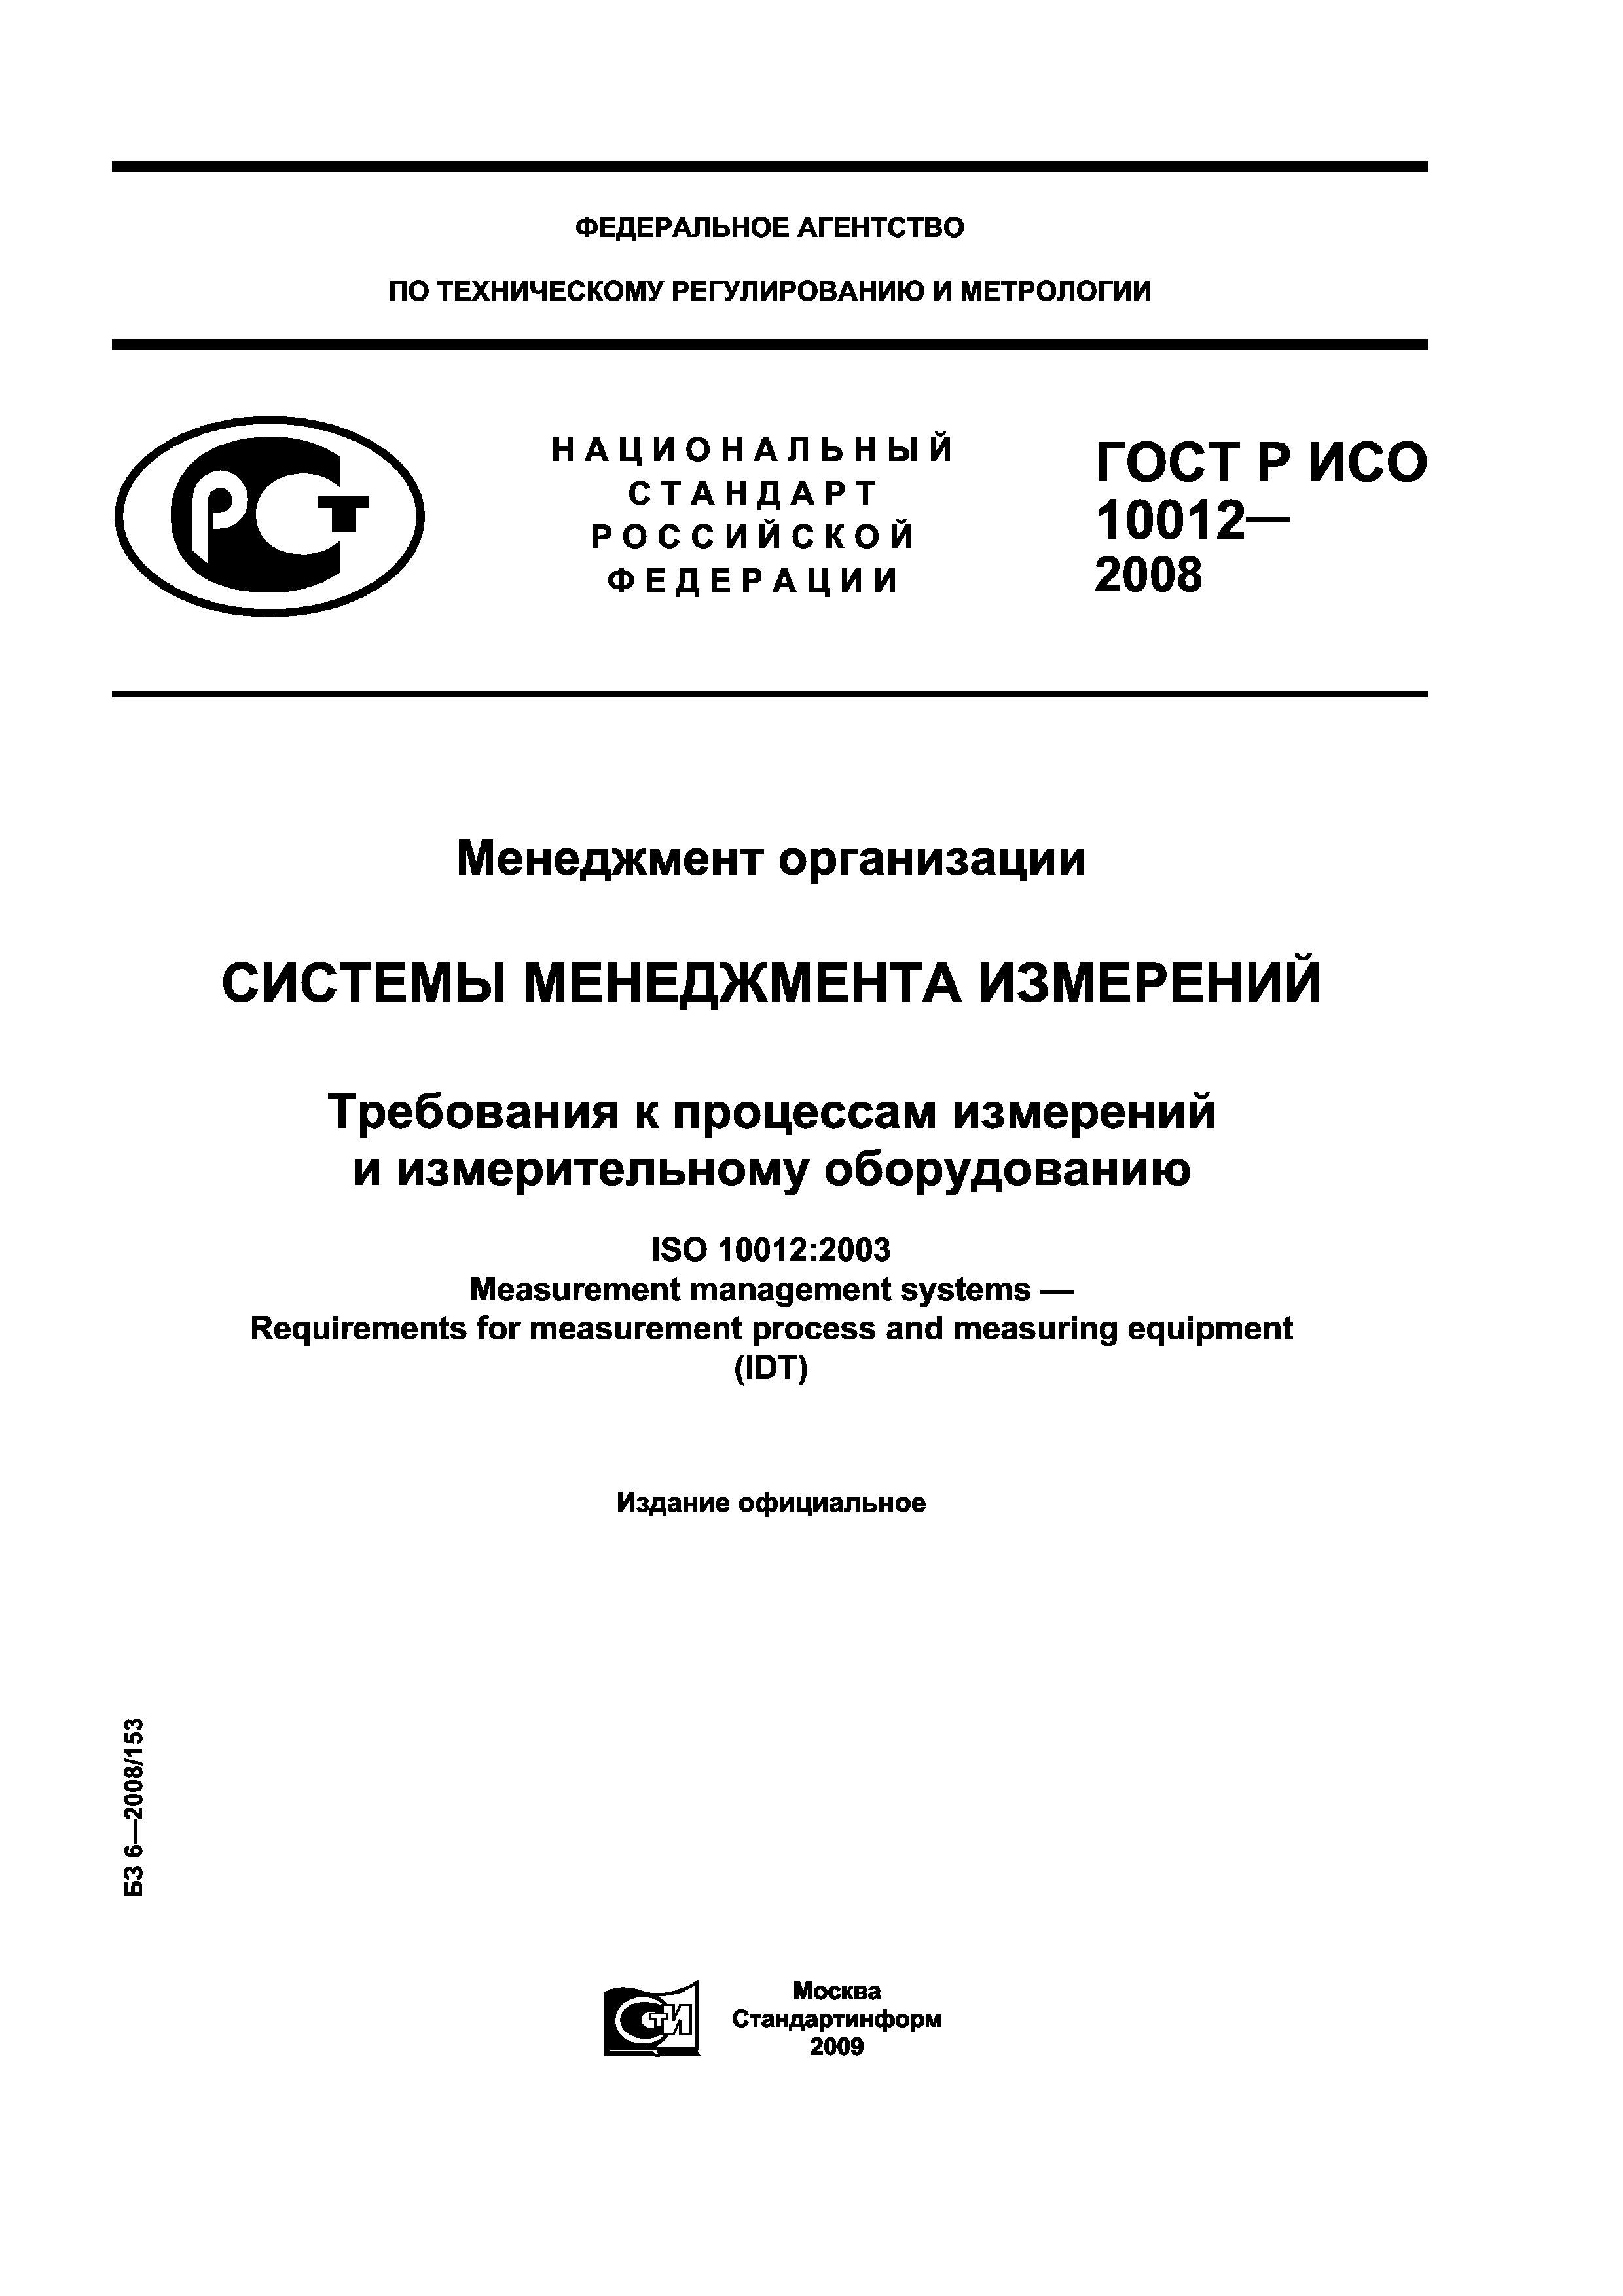 ГОСТ Р ИСО 10012-2008